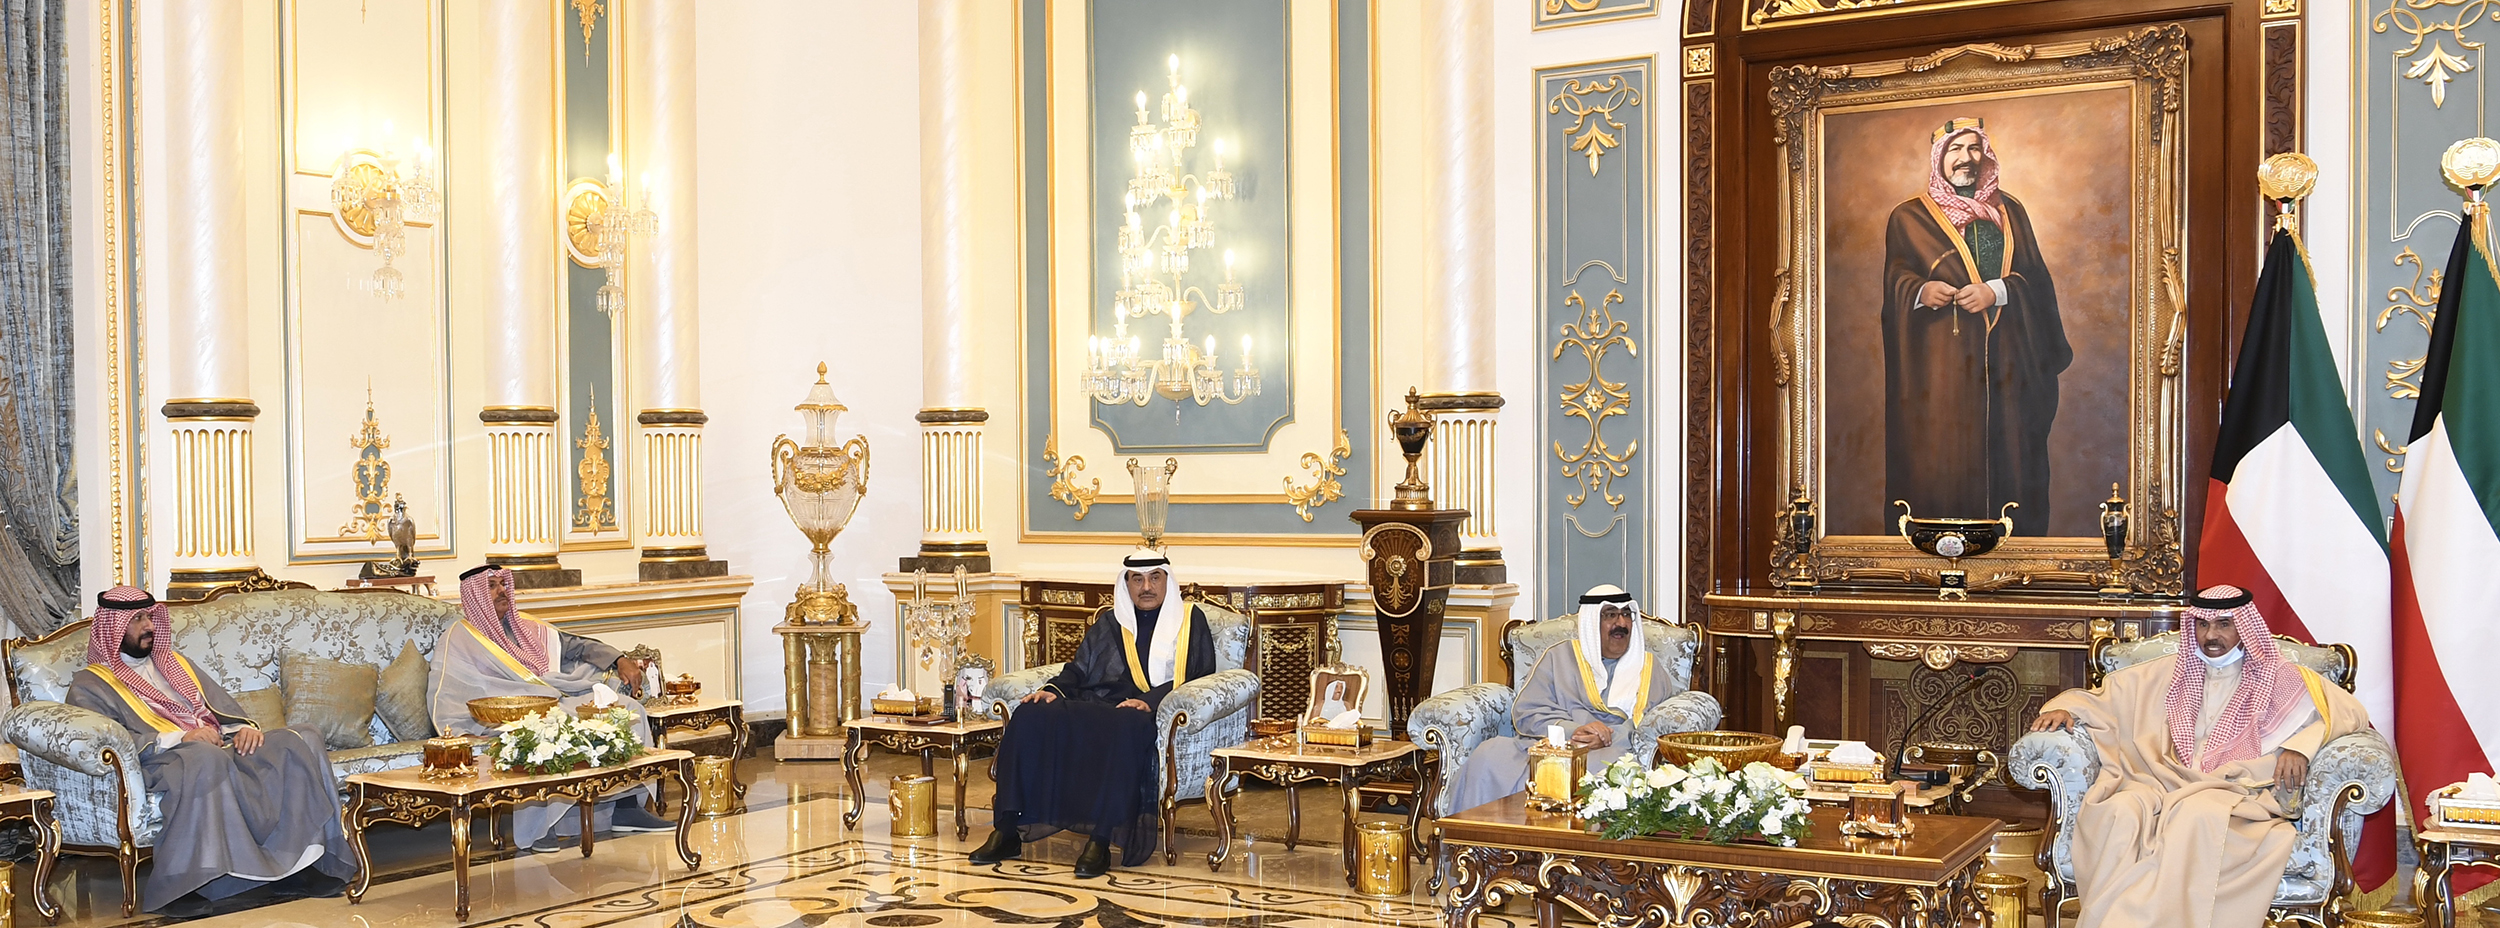 وزيري الداخلية والدفاع الكويتي  يؤديا اليمين الدستورية أمام  أمير الكويت (كونا)